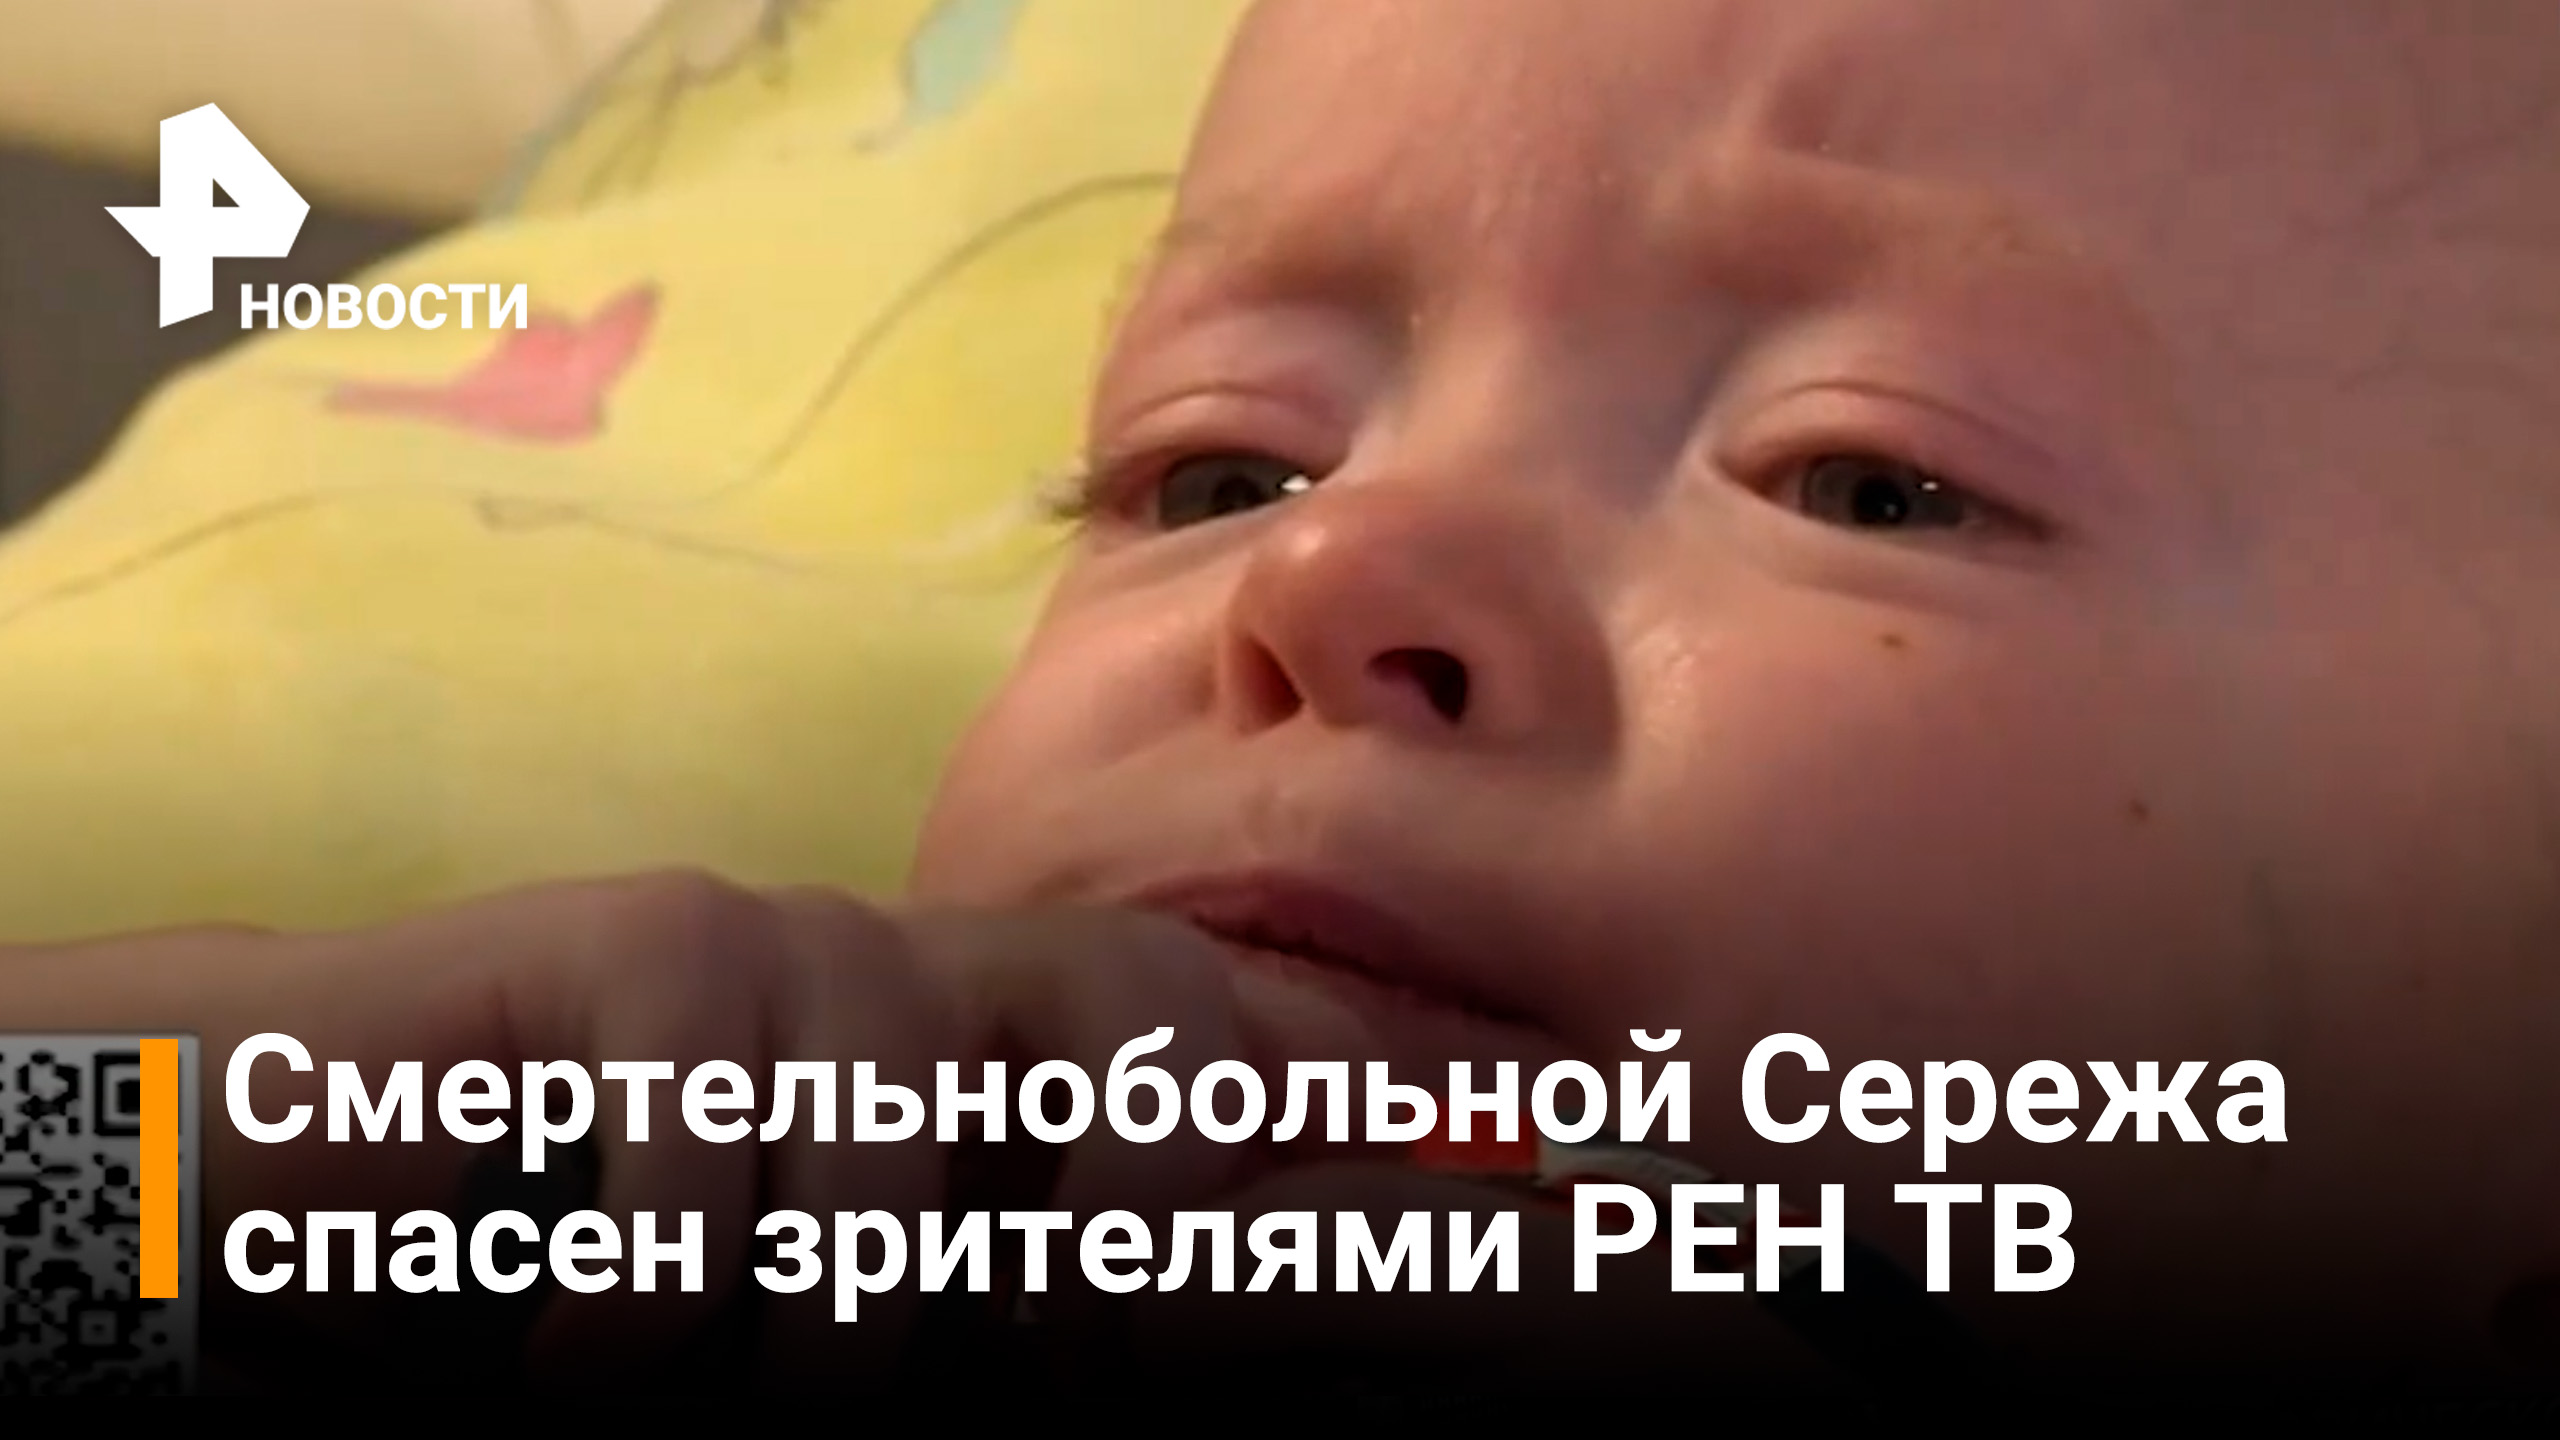 Зрители РЕН ТВ смогли помочь маленькому Сереже со смертельной болезнью / РЕН Новости